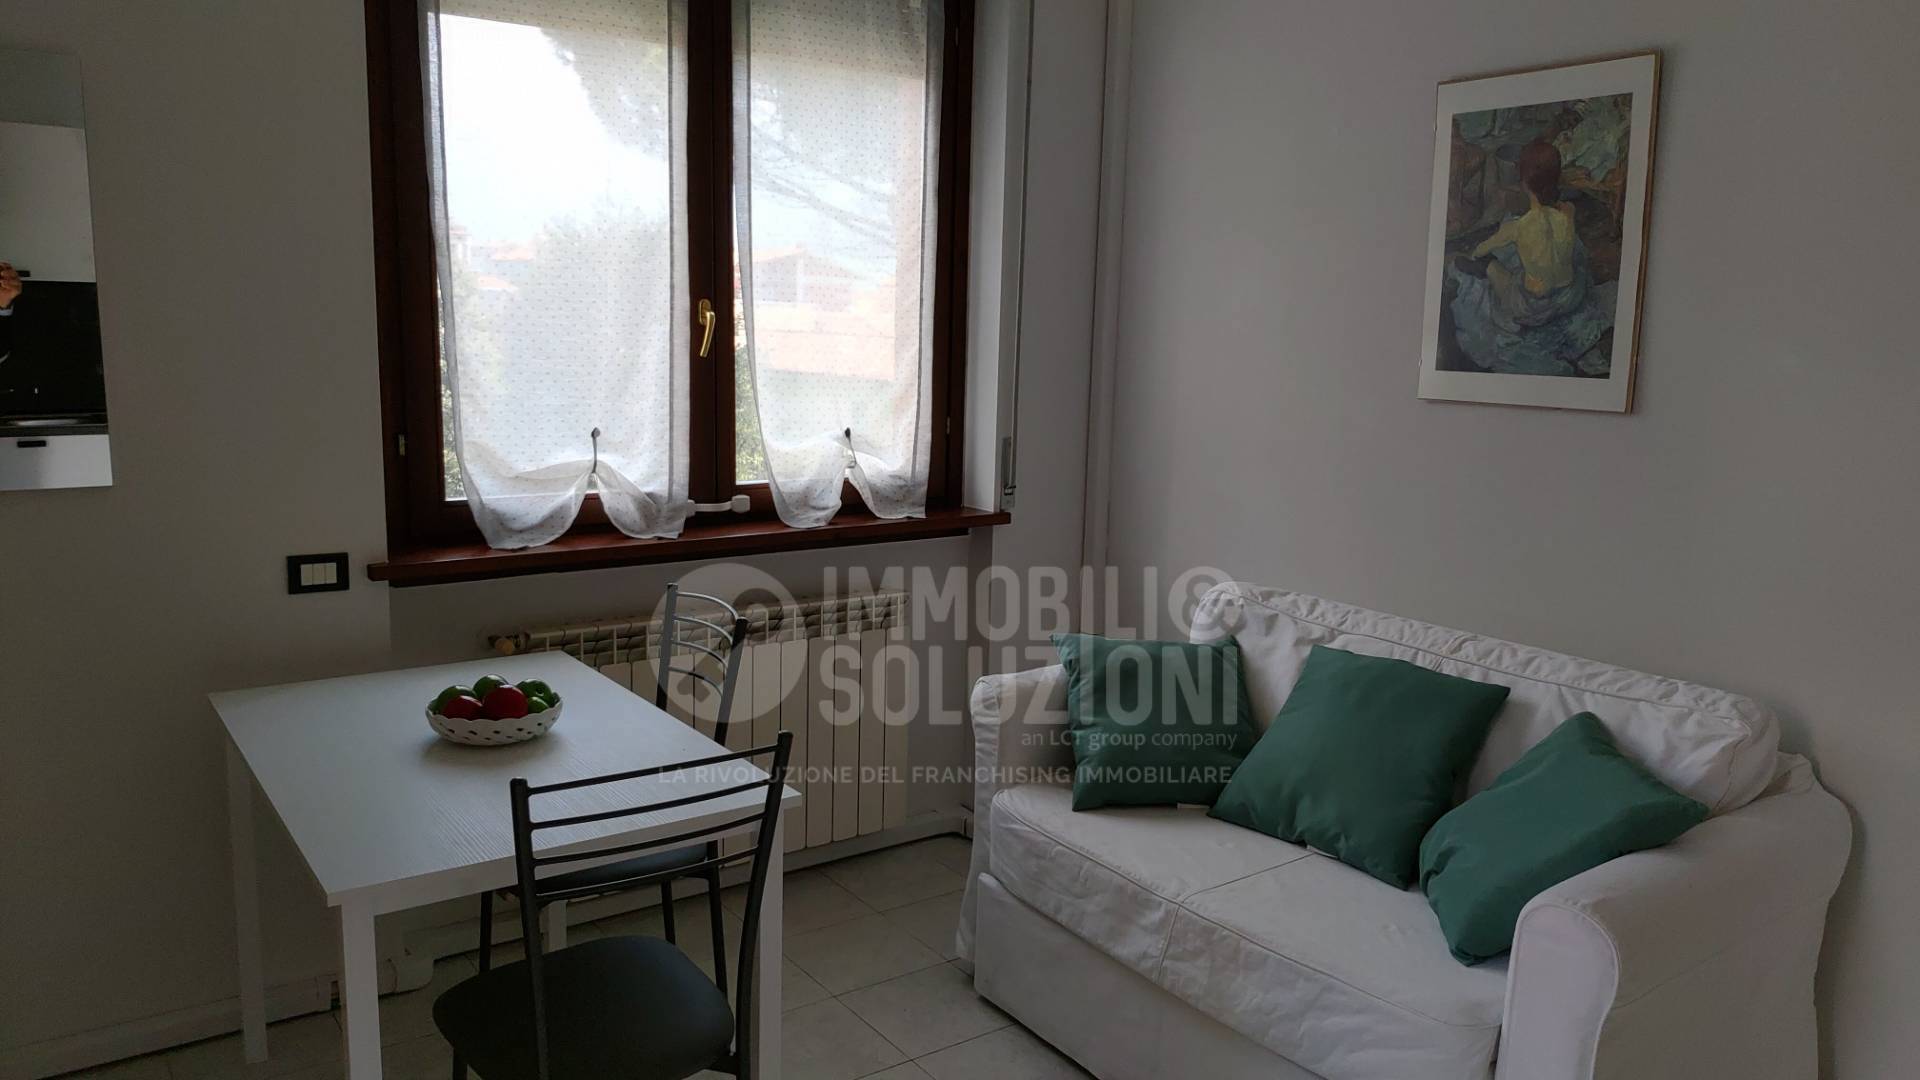 Appartamento in affitto a Alzano Lombardo, 2 locali, prezzo € 500 | CambioCasa.it